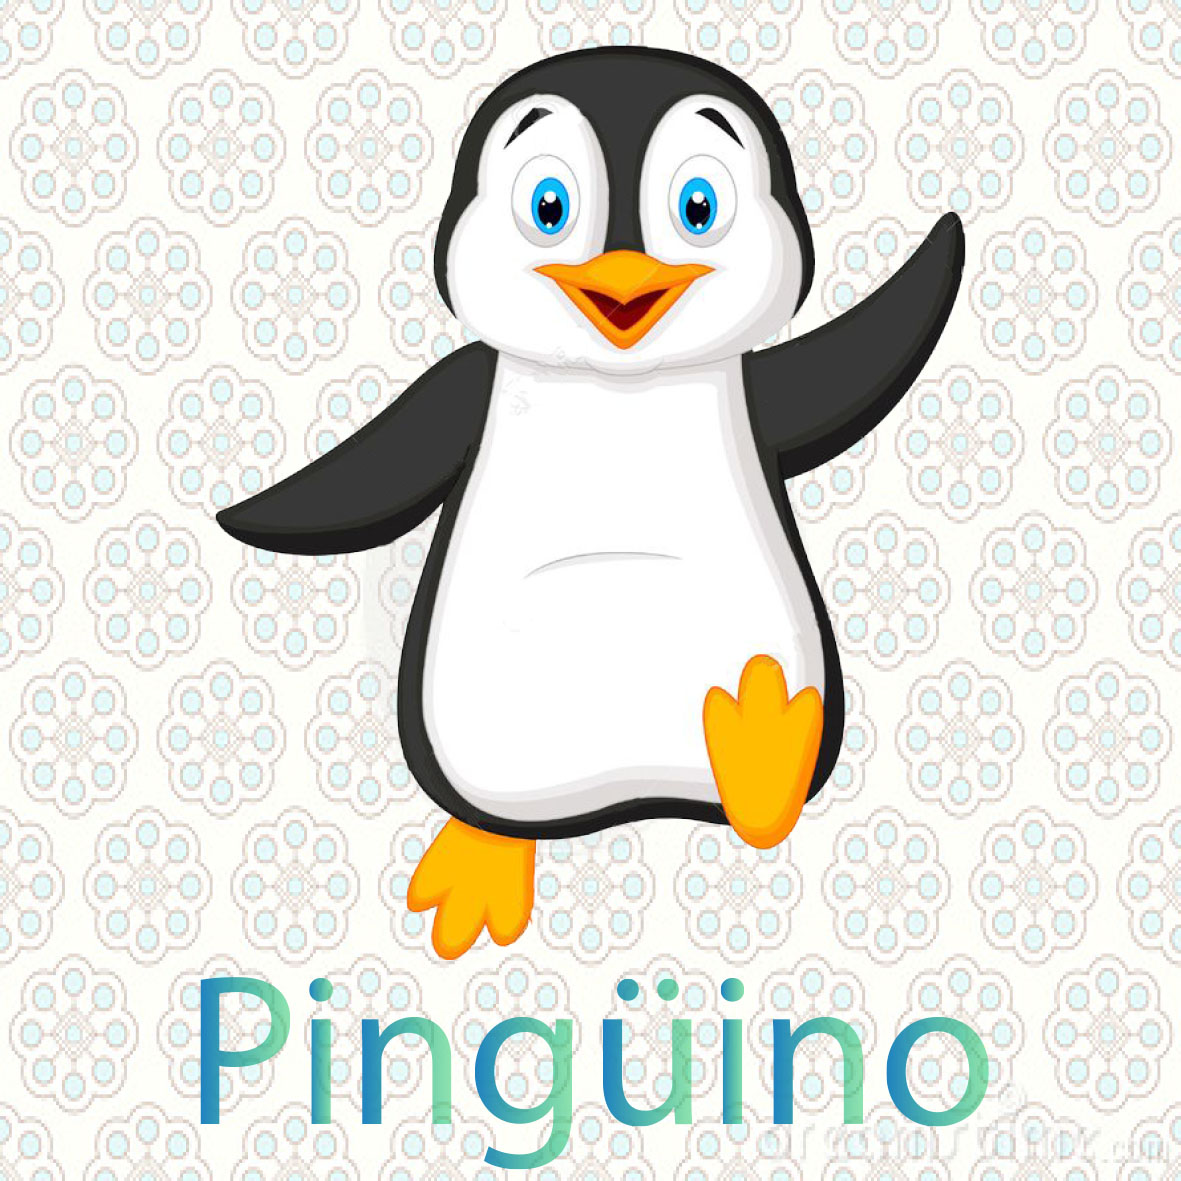 imagen de una pinguino son aves de color blanco con negro tiene dos patas, una cola y dos alas, pero no pueden volar. Viven en la antartica 